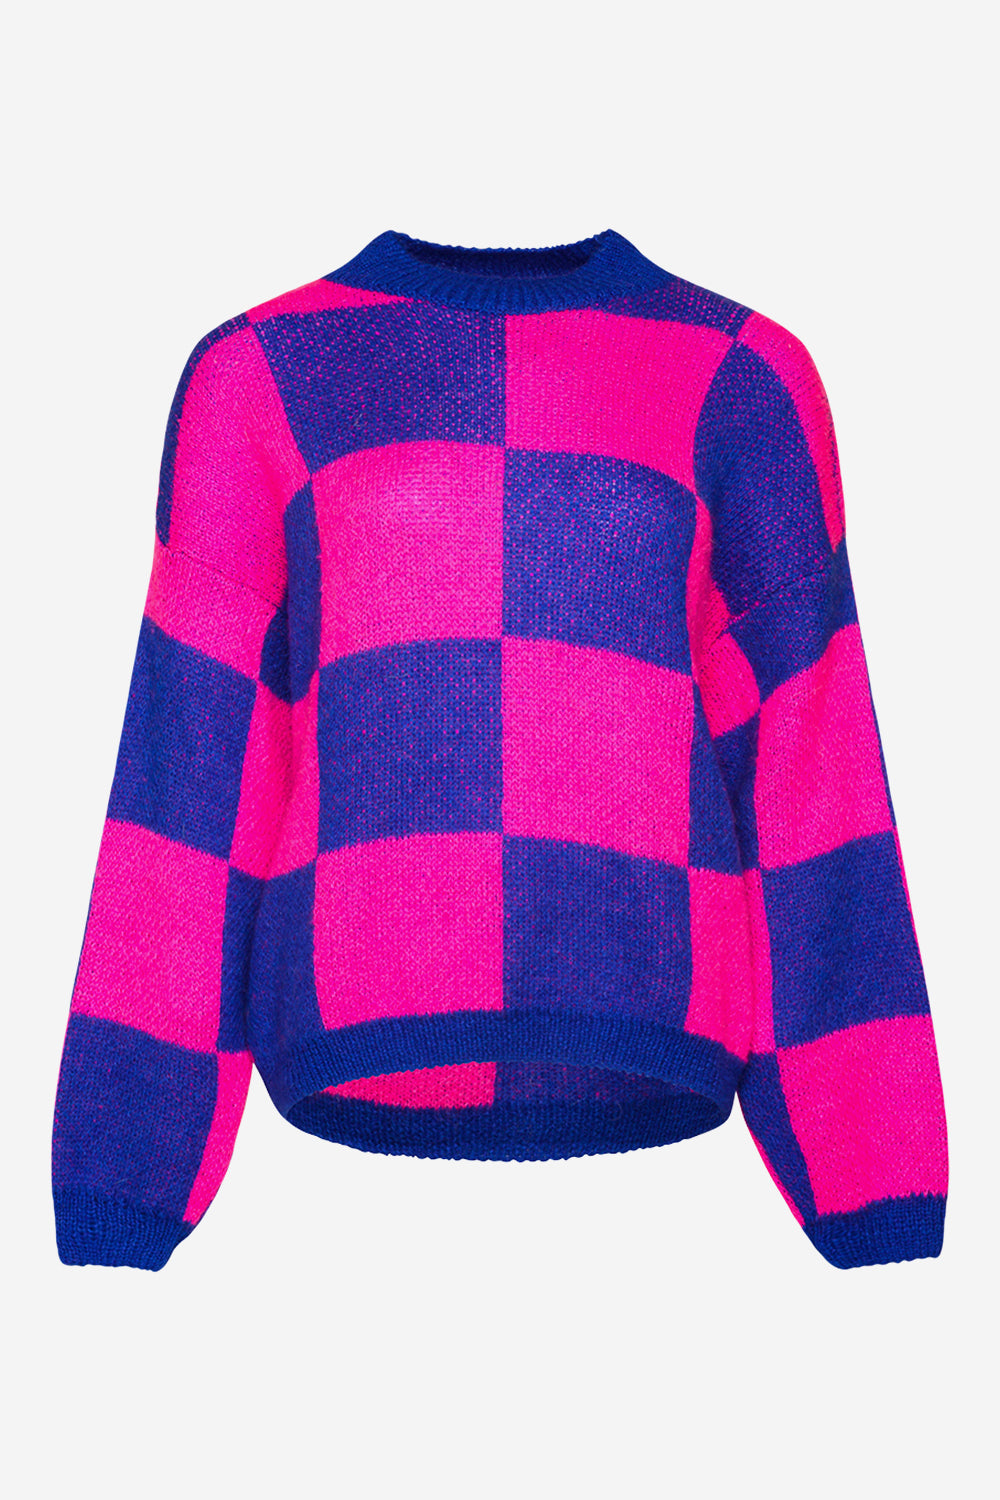 Kiana Knit Sweater Pink/Blue Mix